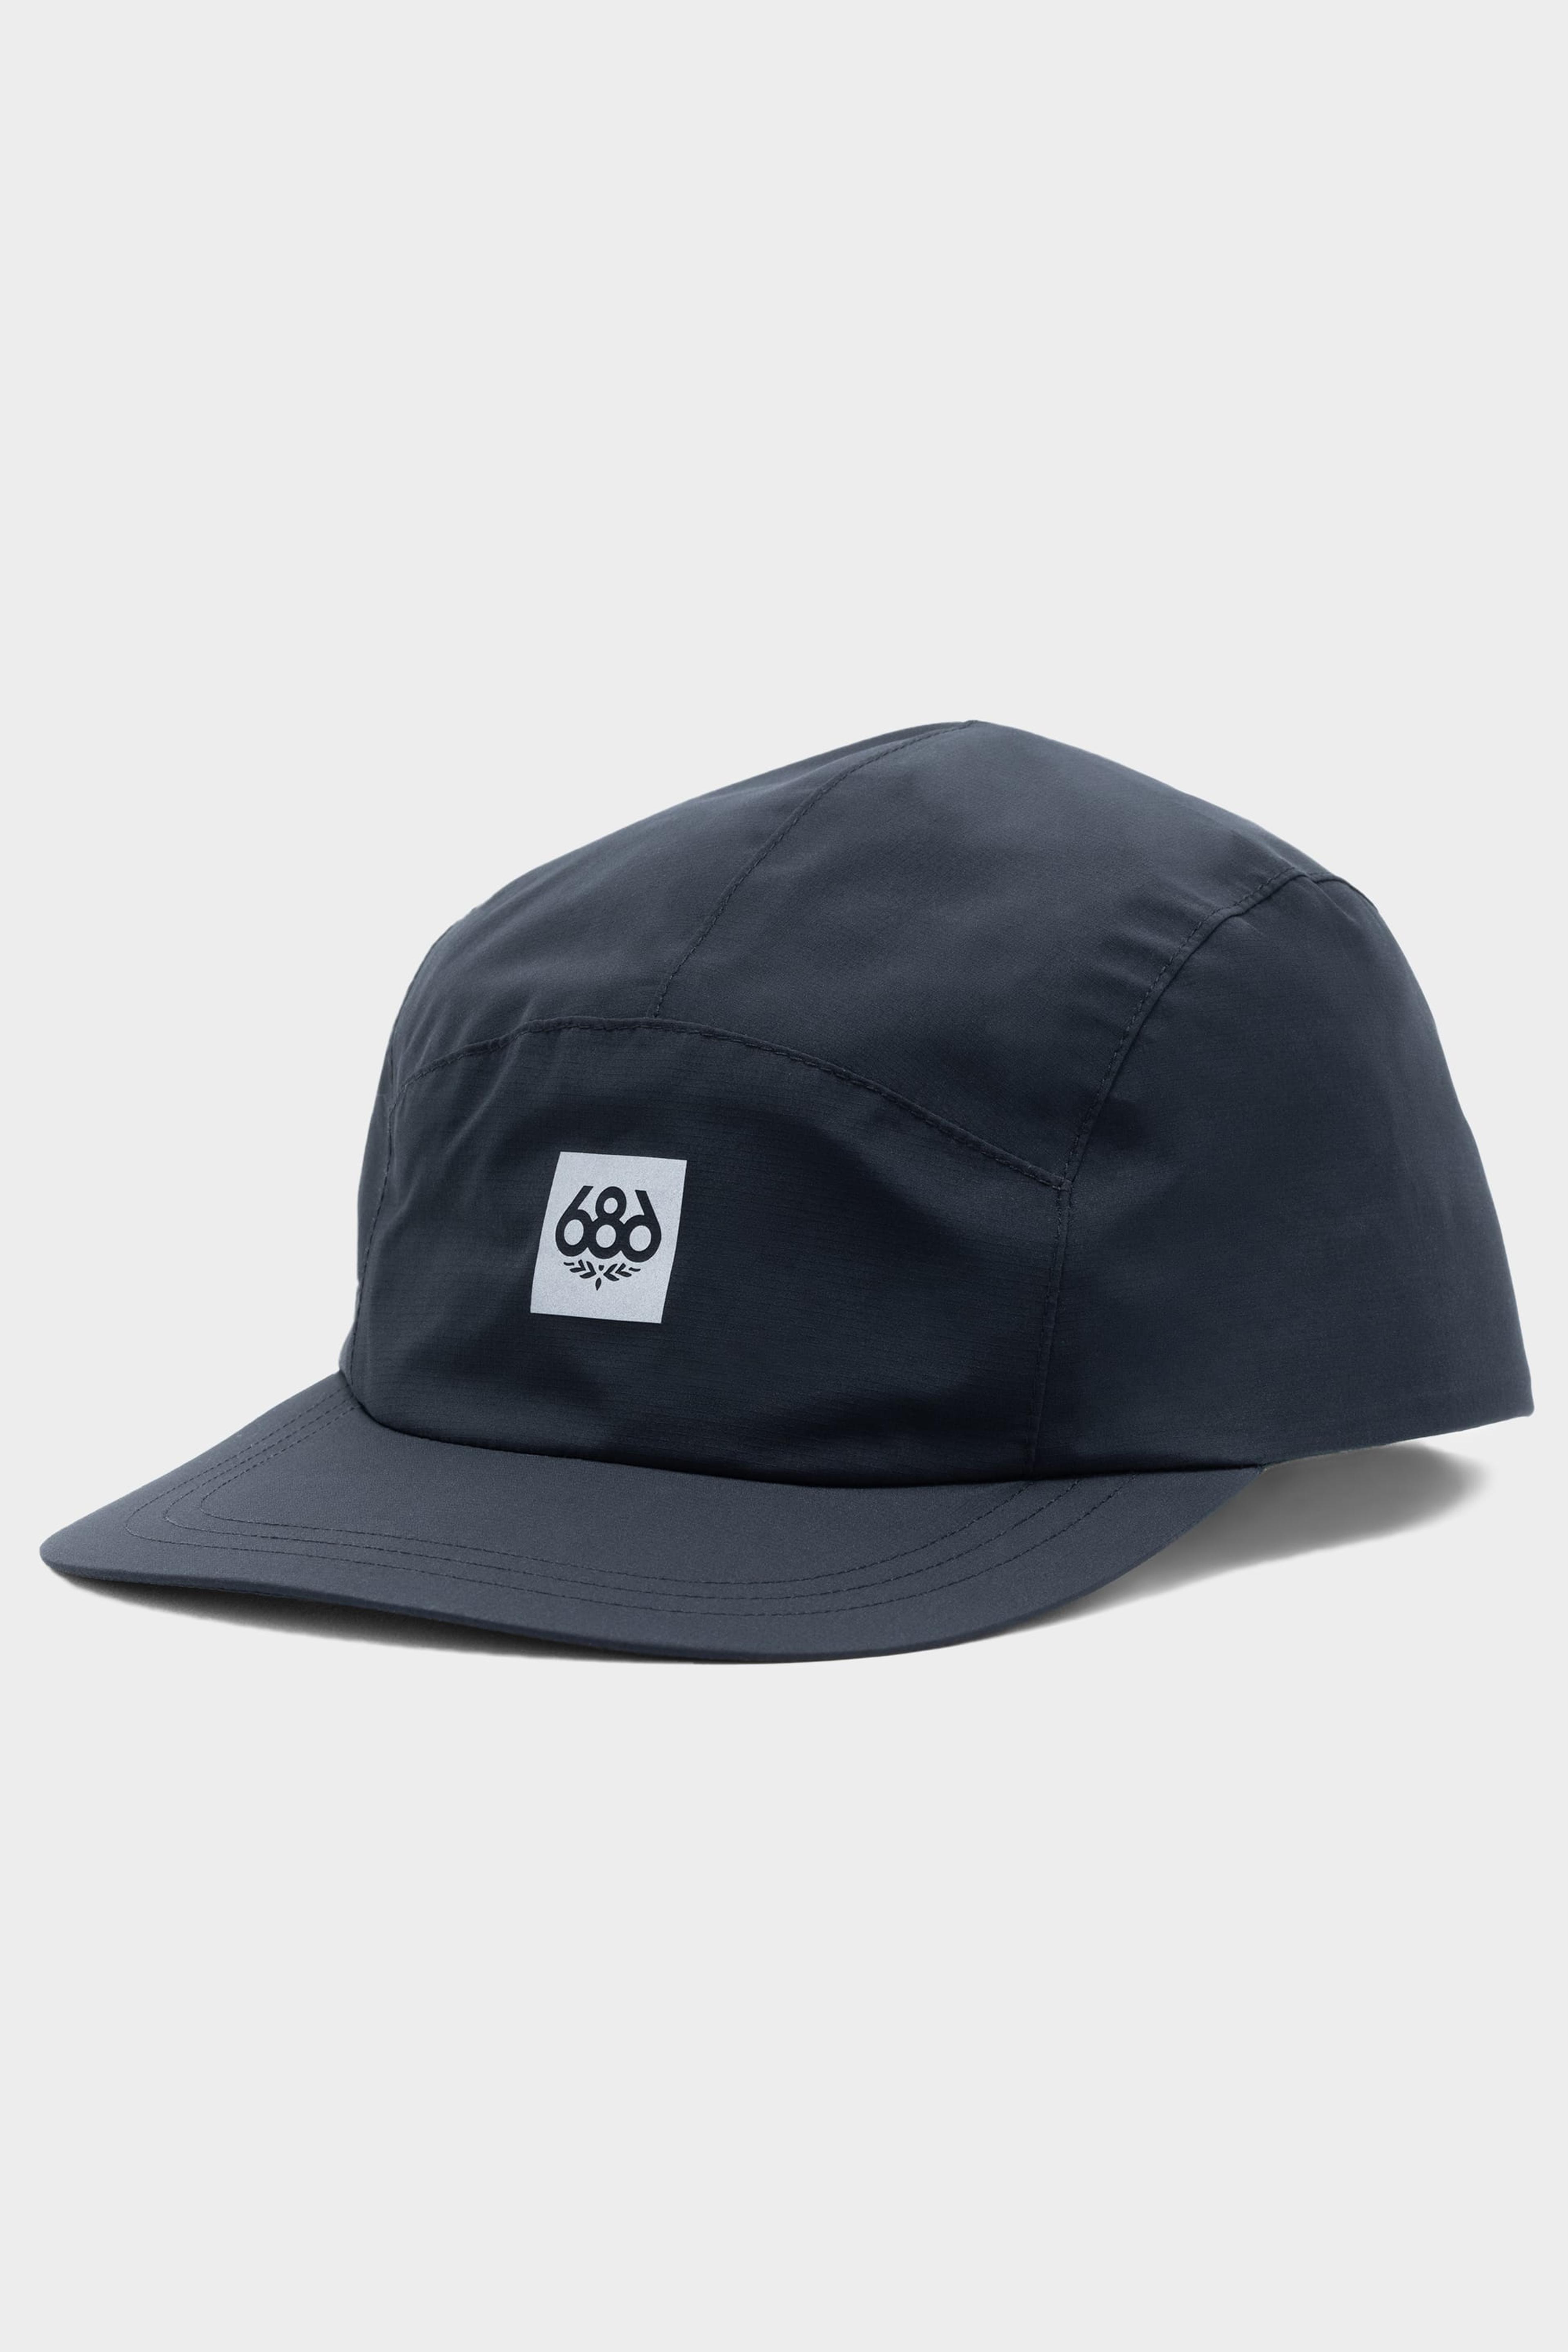 686 GORE-TEX INFINIUM™ Hat